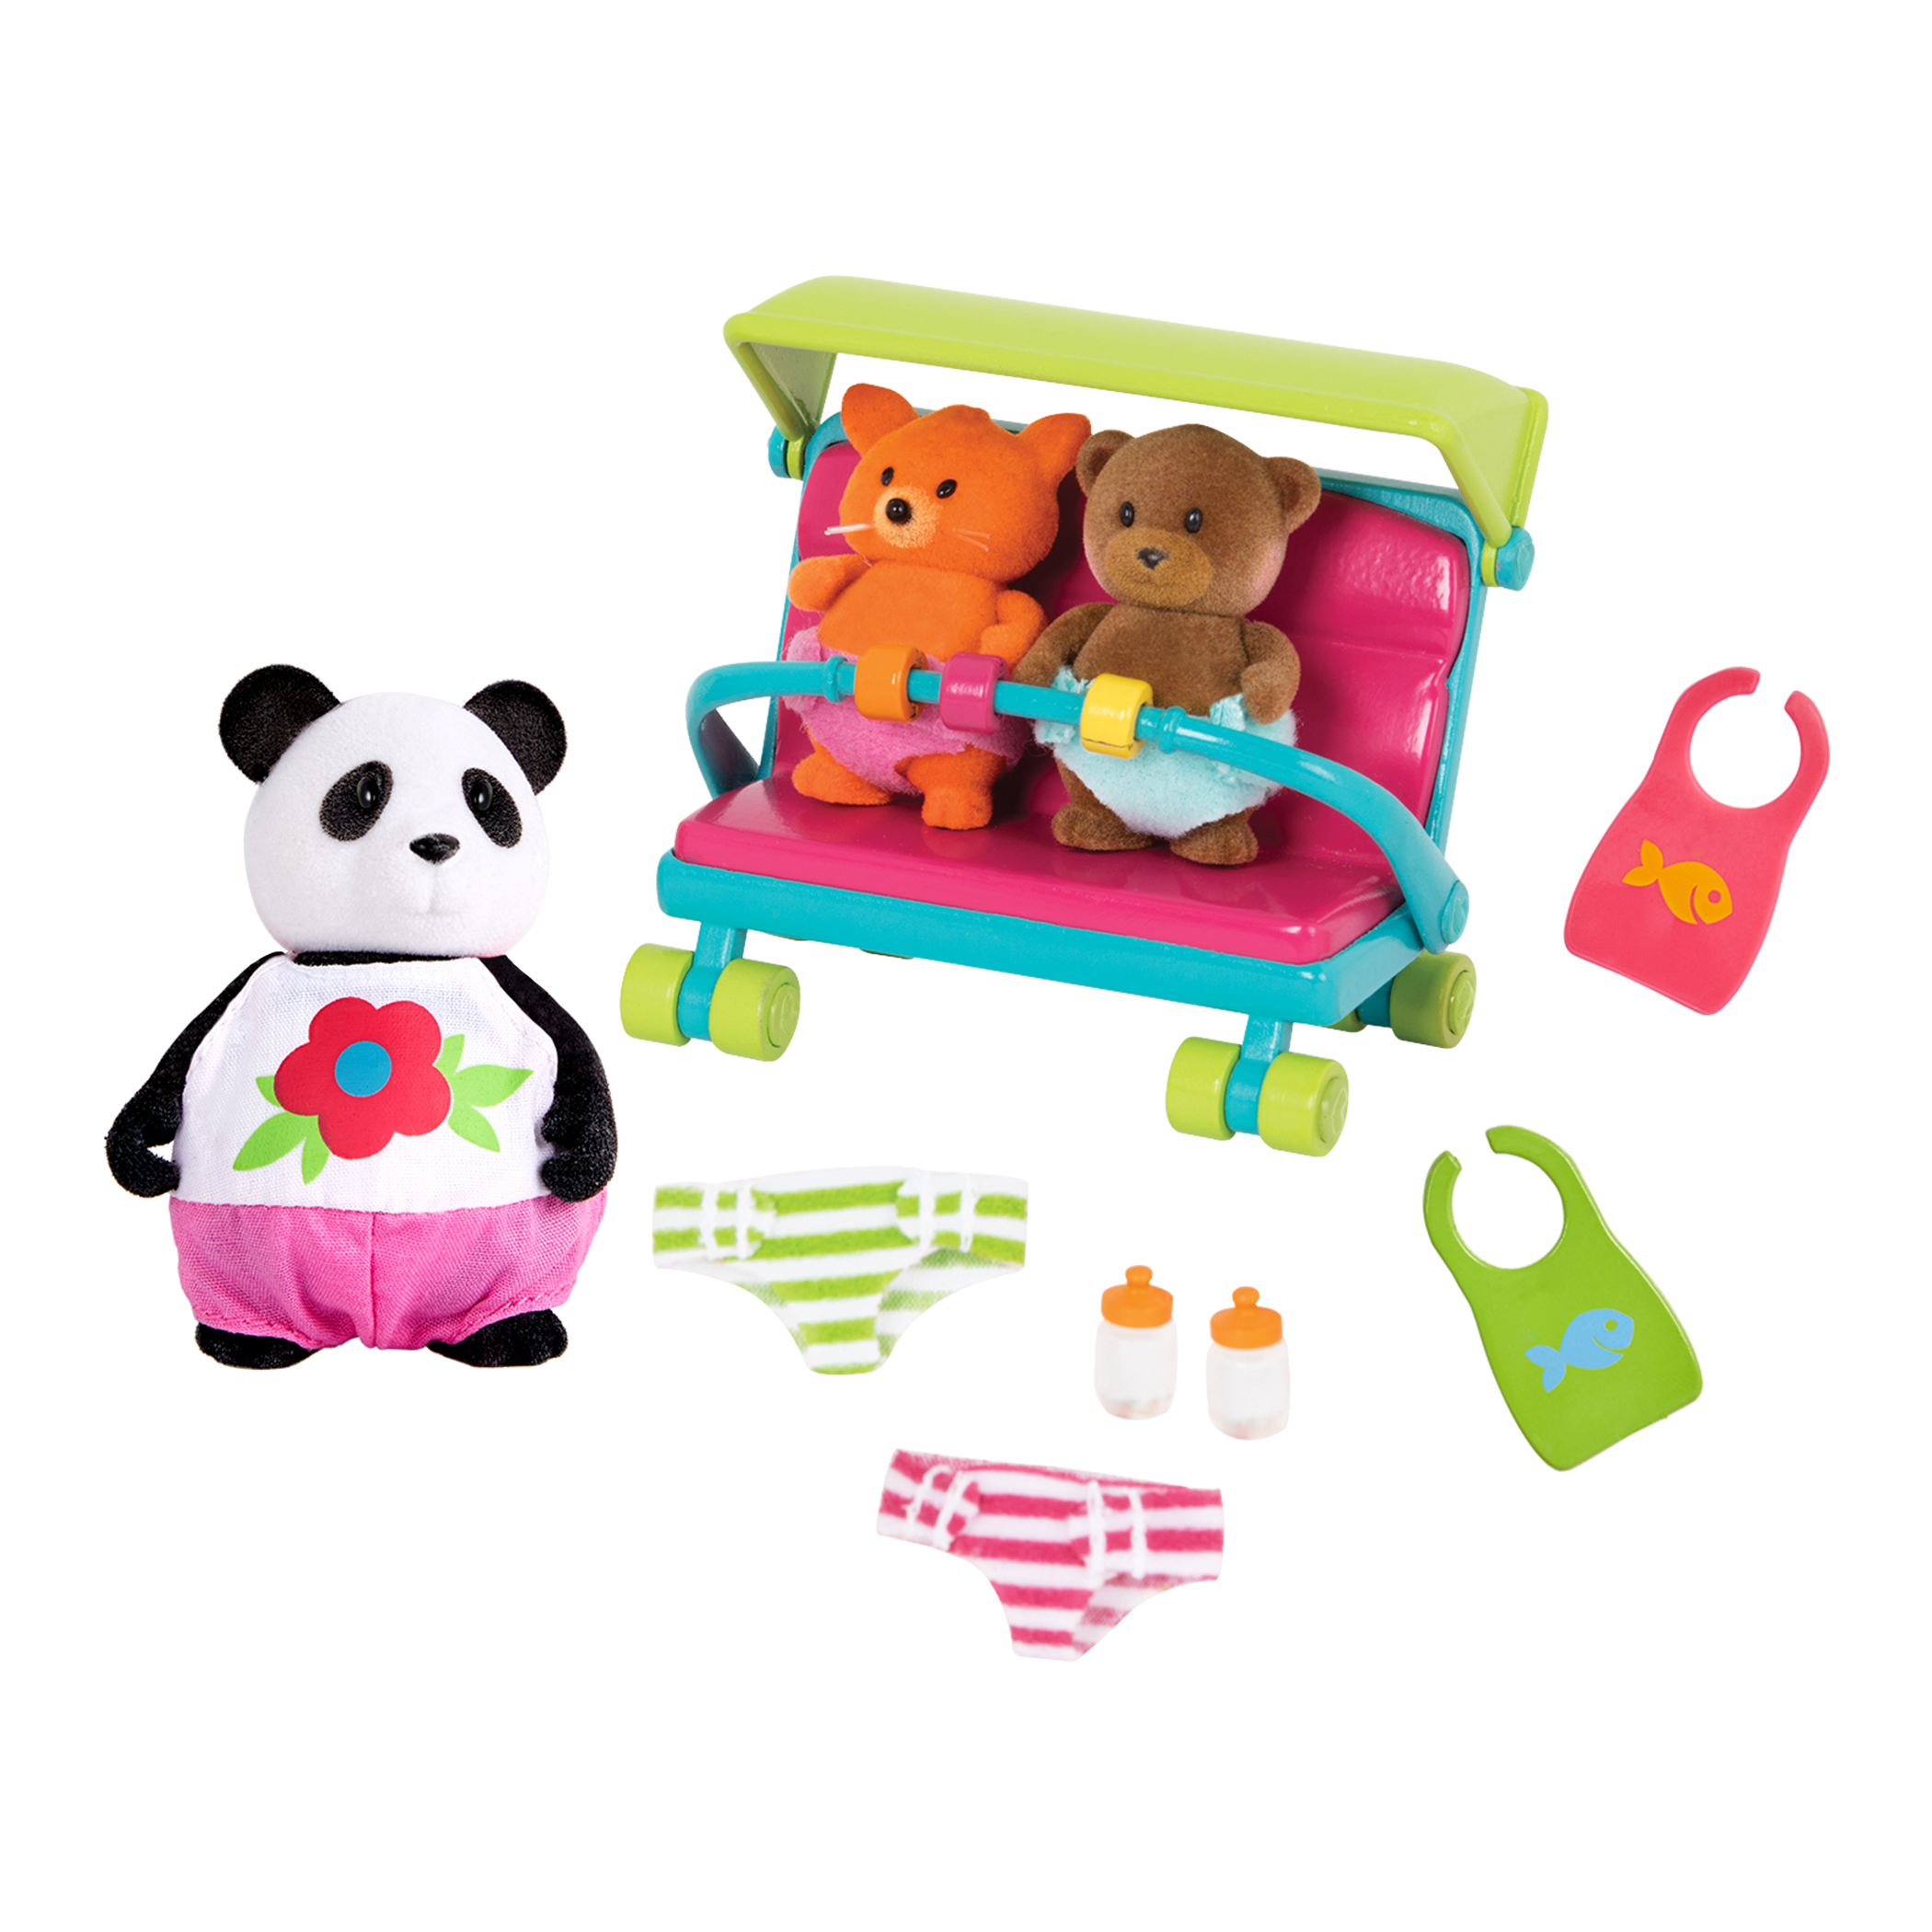 Babysitter Set | Playset with Baby Accessories | Li'l Woodzeez